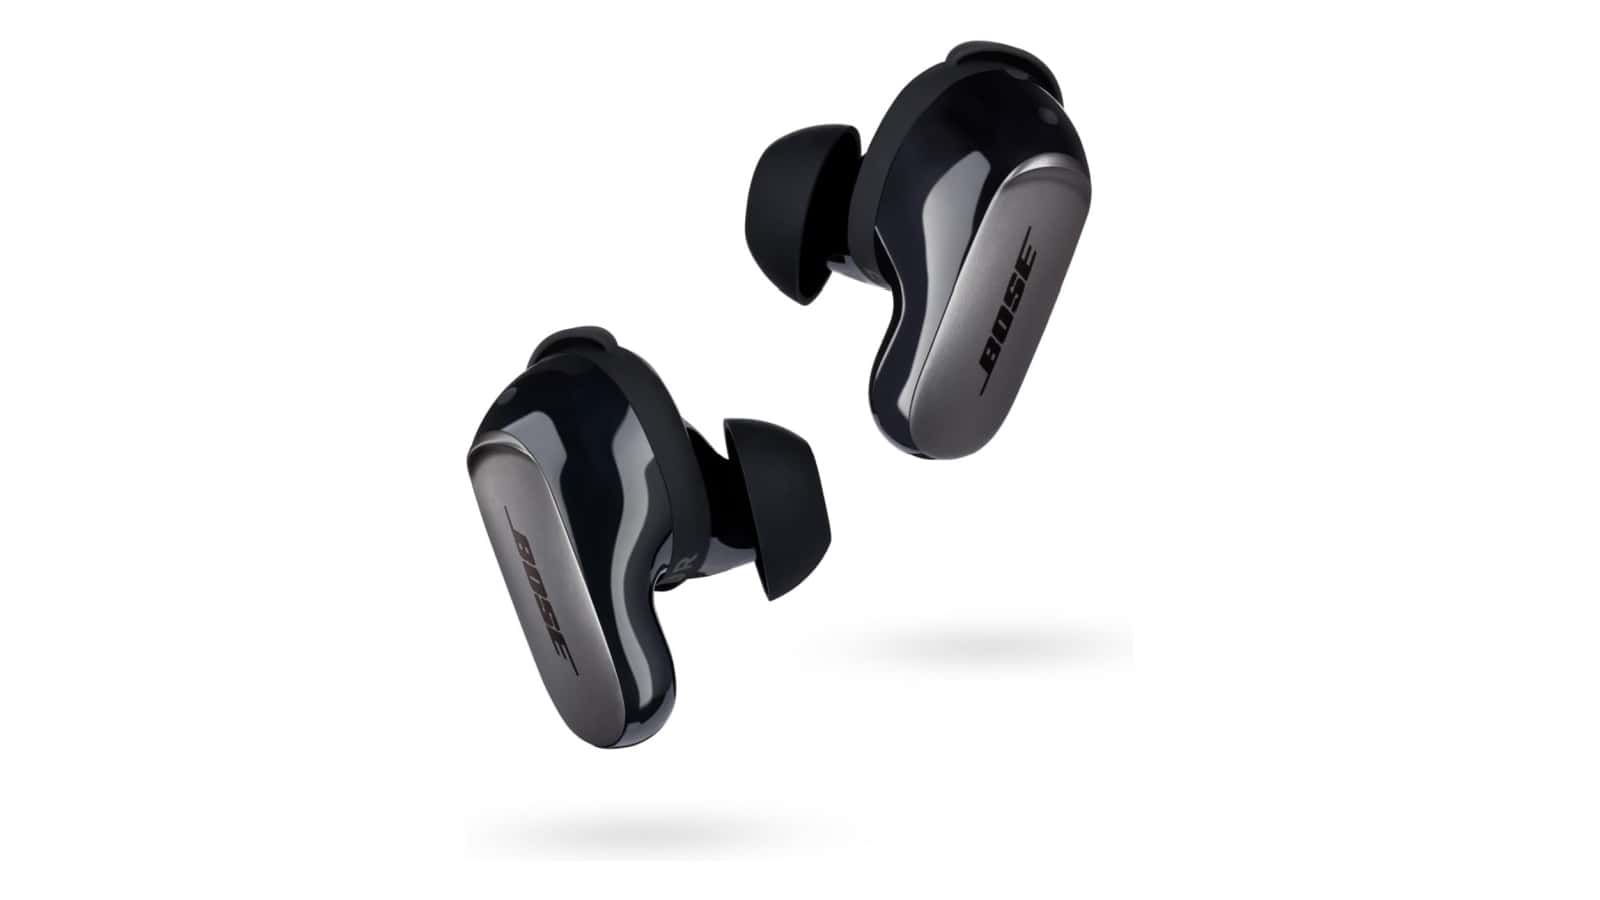 ¡Los auriculares Bose QuietComfort Ultra ahora tienen un descuento de $ 50 en Amazon!